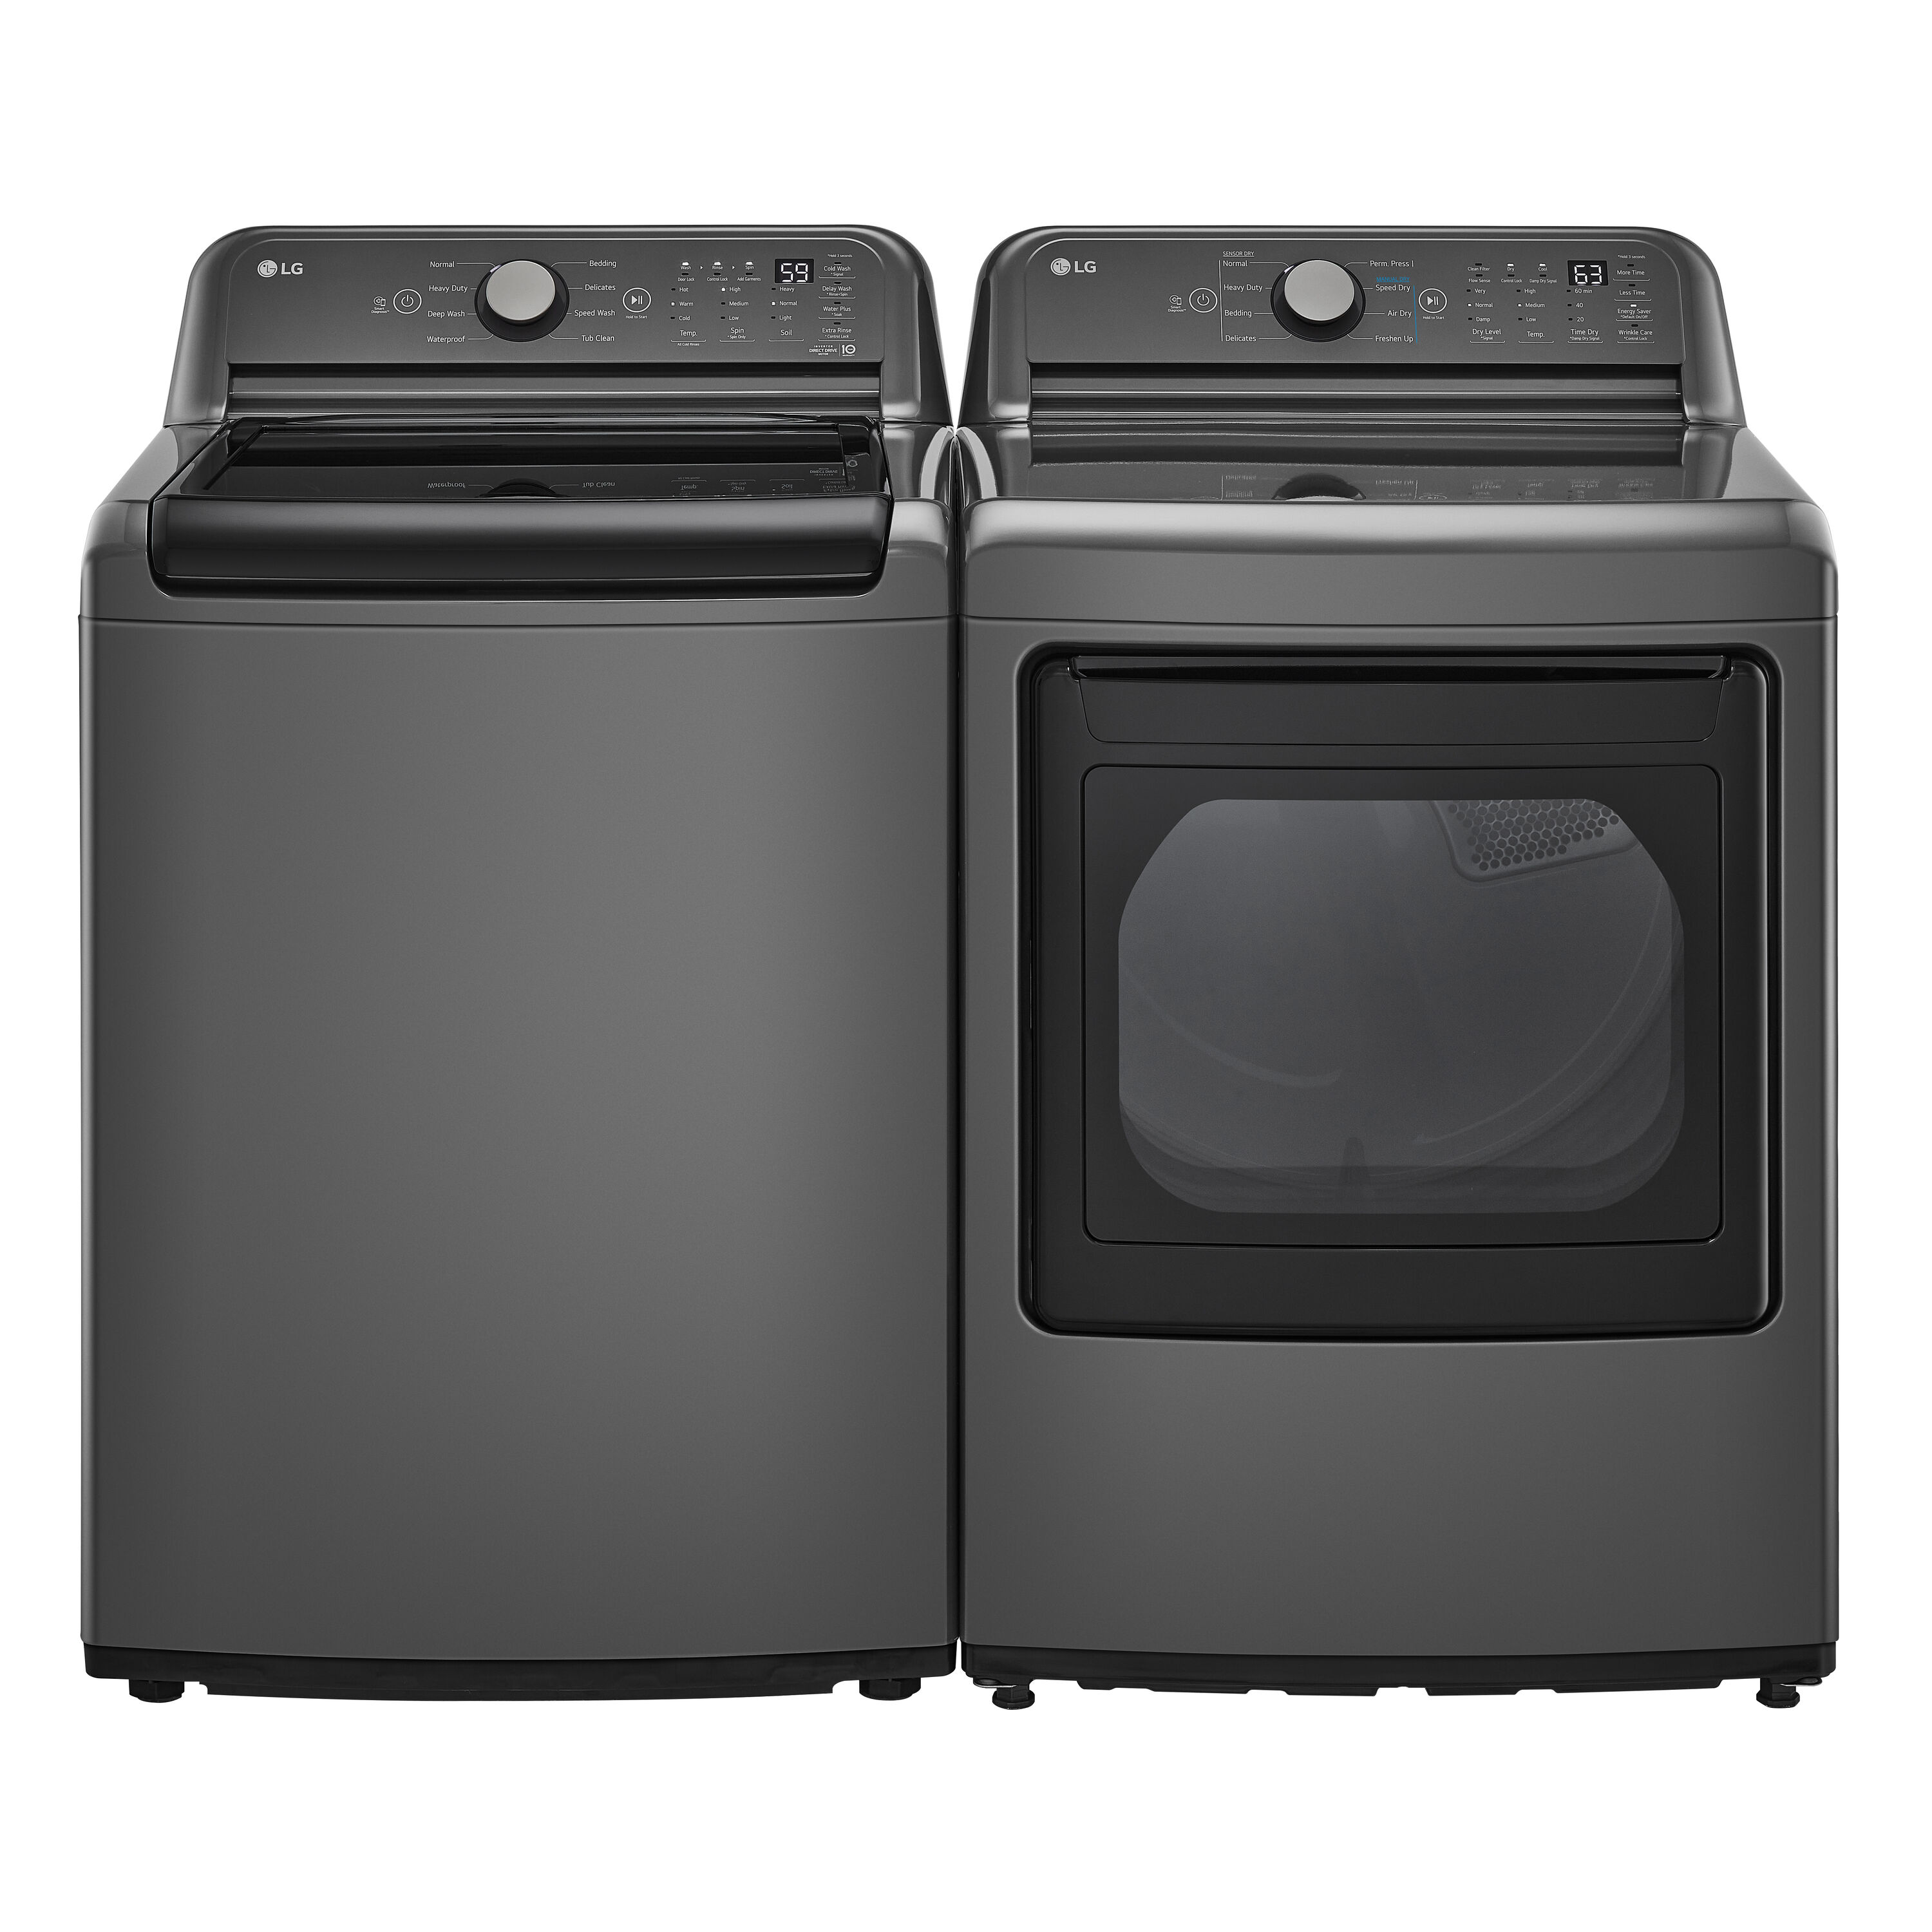 LG Recalls Top-Loading Washing Machines Due to Risk of Injury